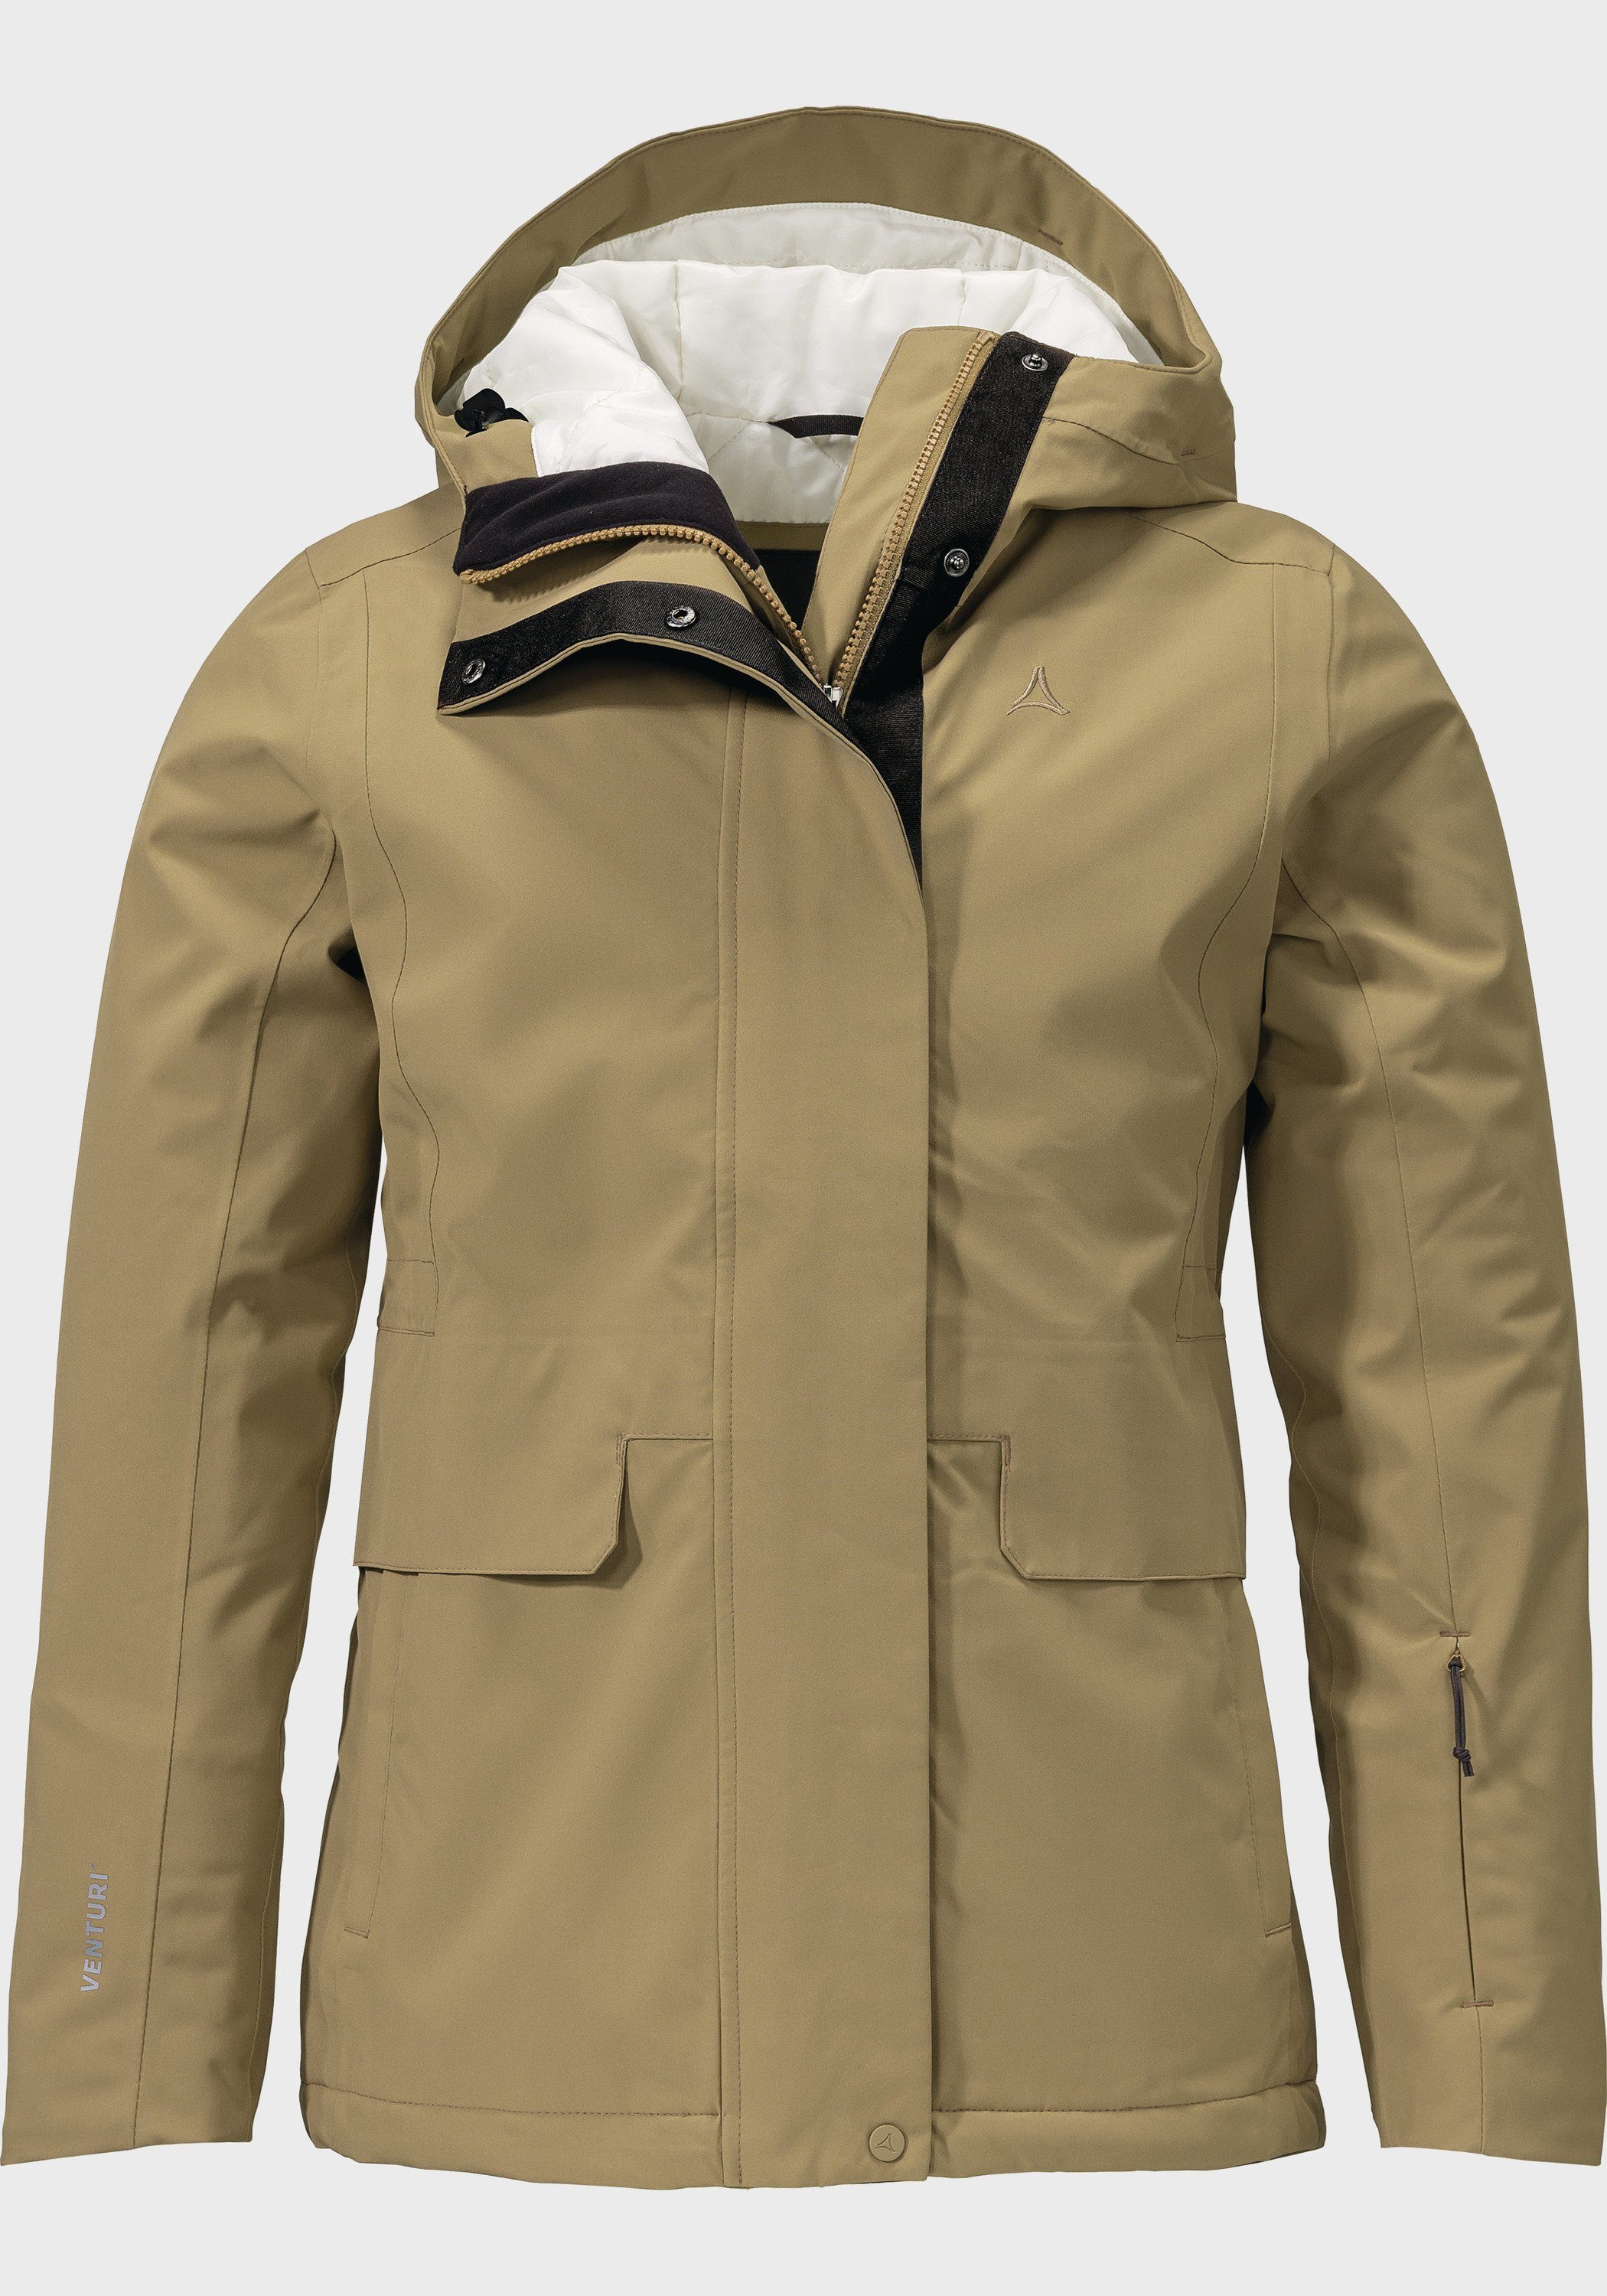 L Jacket Ins Antwerpen beige Outdoorjacke Schöffel